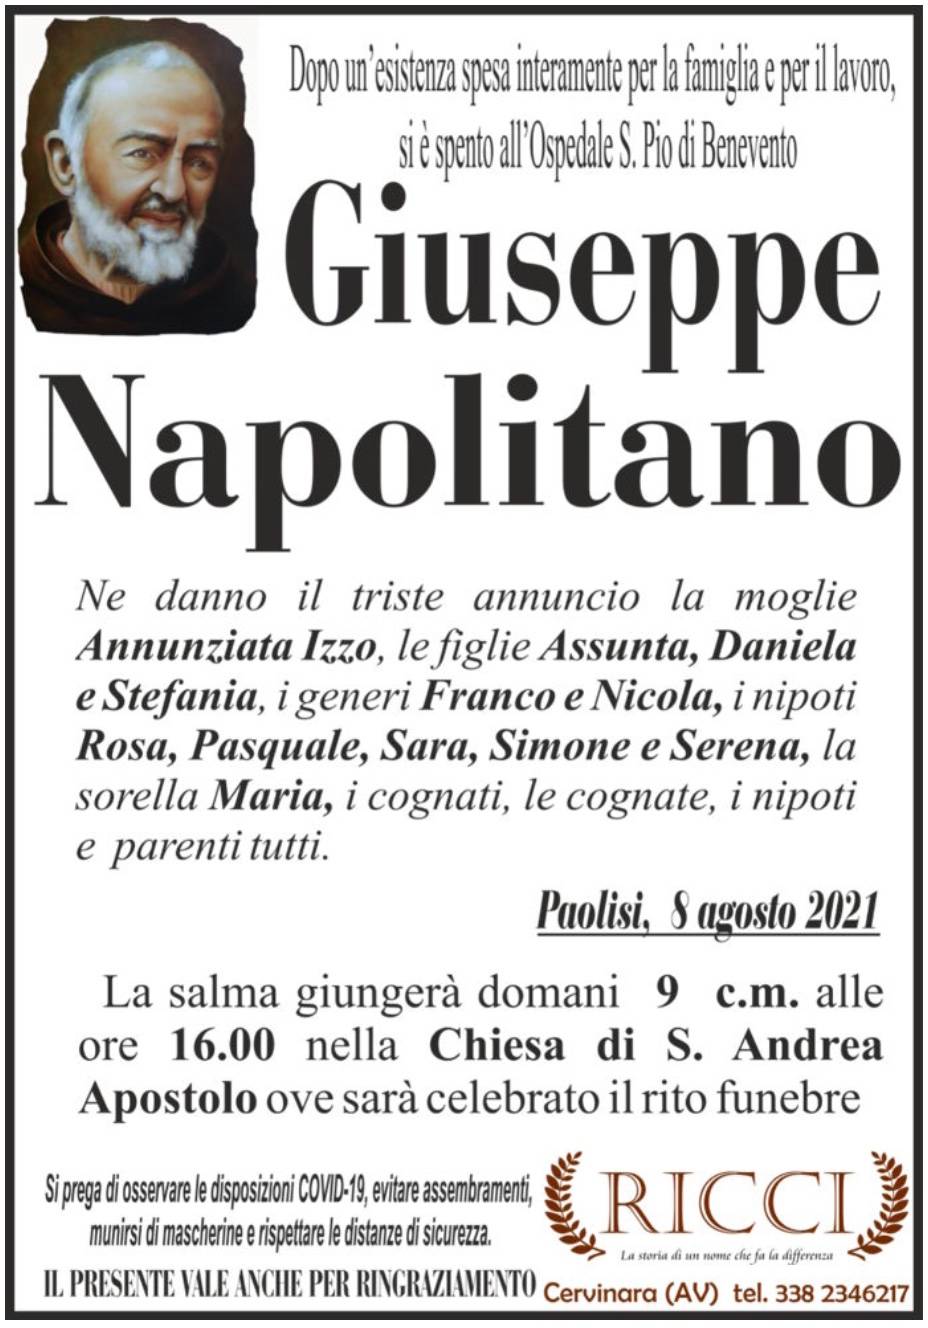 Giuseppe Napolitano